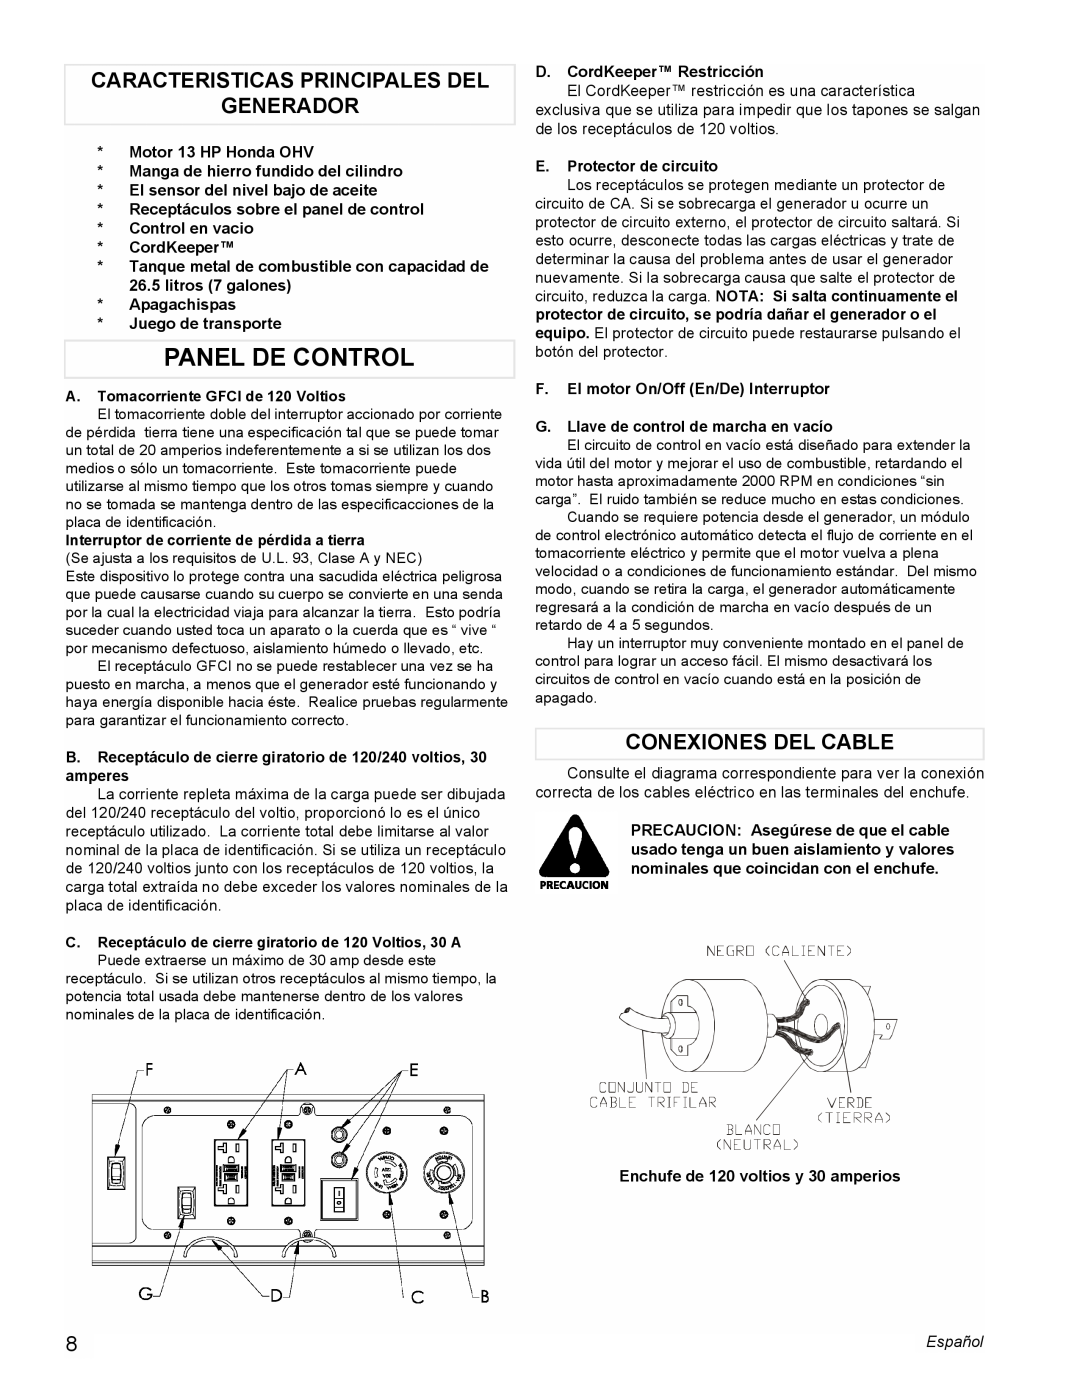 Powermate PM0605000 manual Panel De Control, Caracteristicas Principales Del Generador, Conexiones Del Cable 